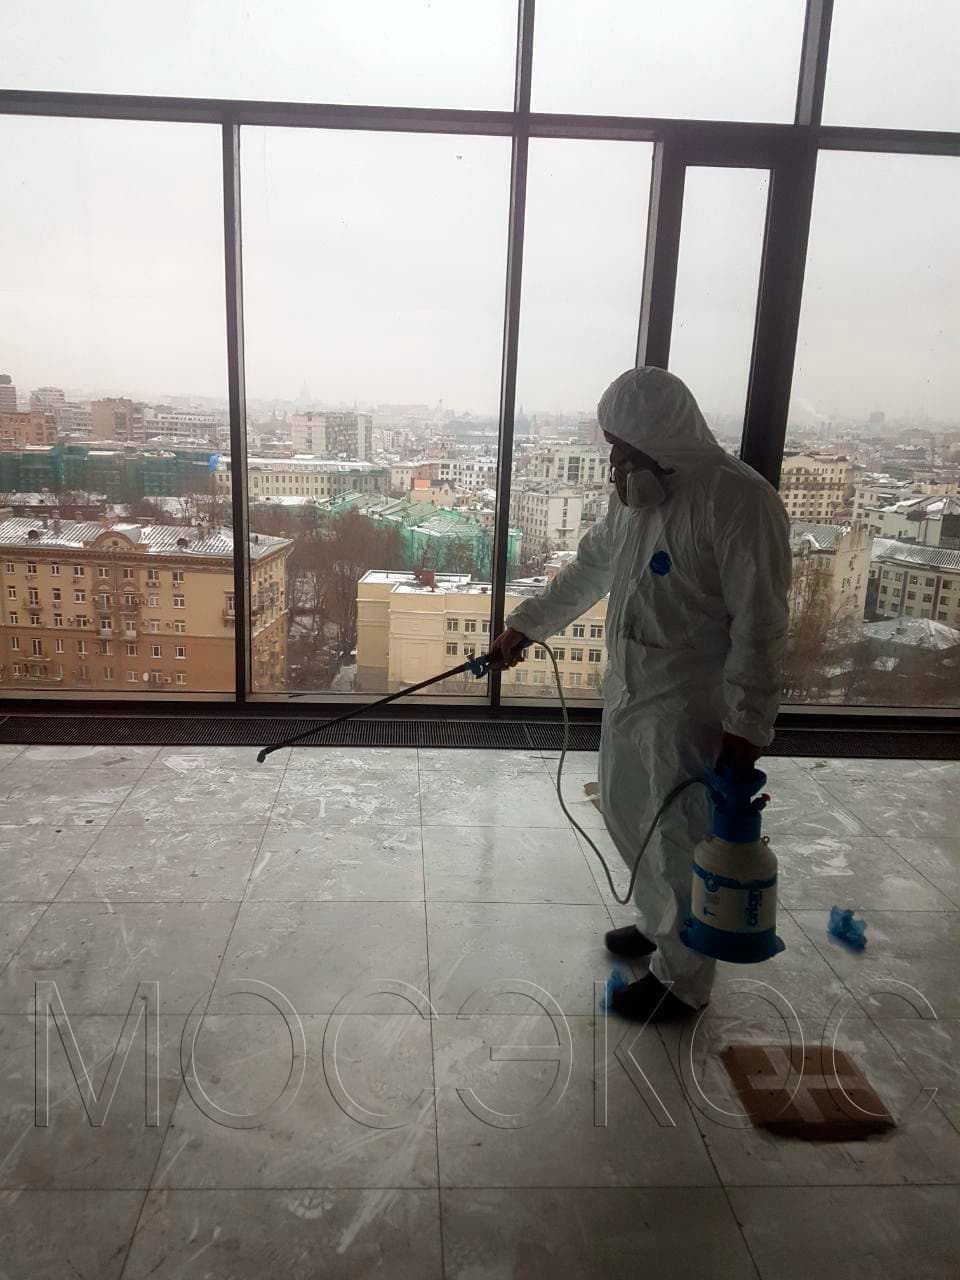 Пест-контроль (Pest Control) в Москве